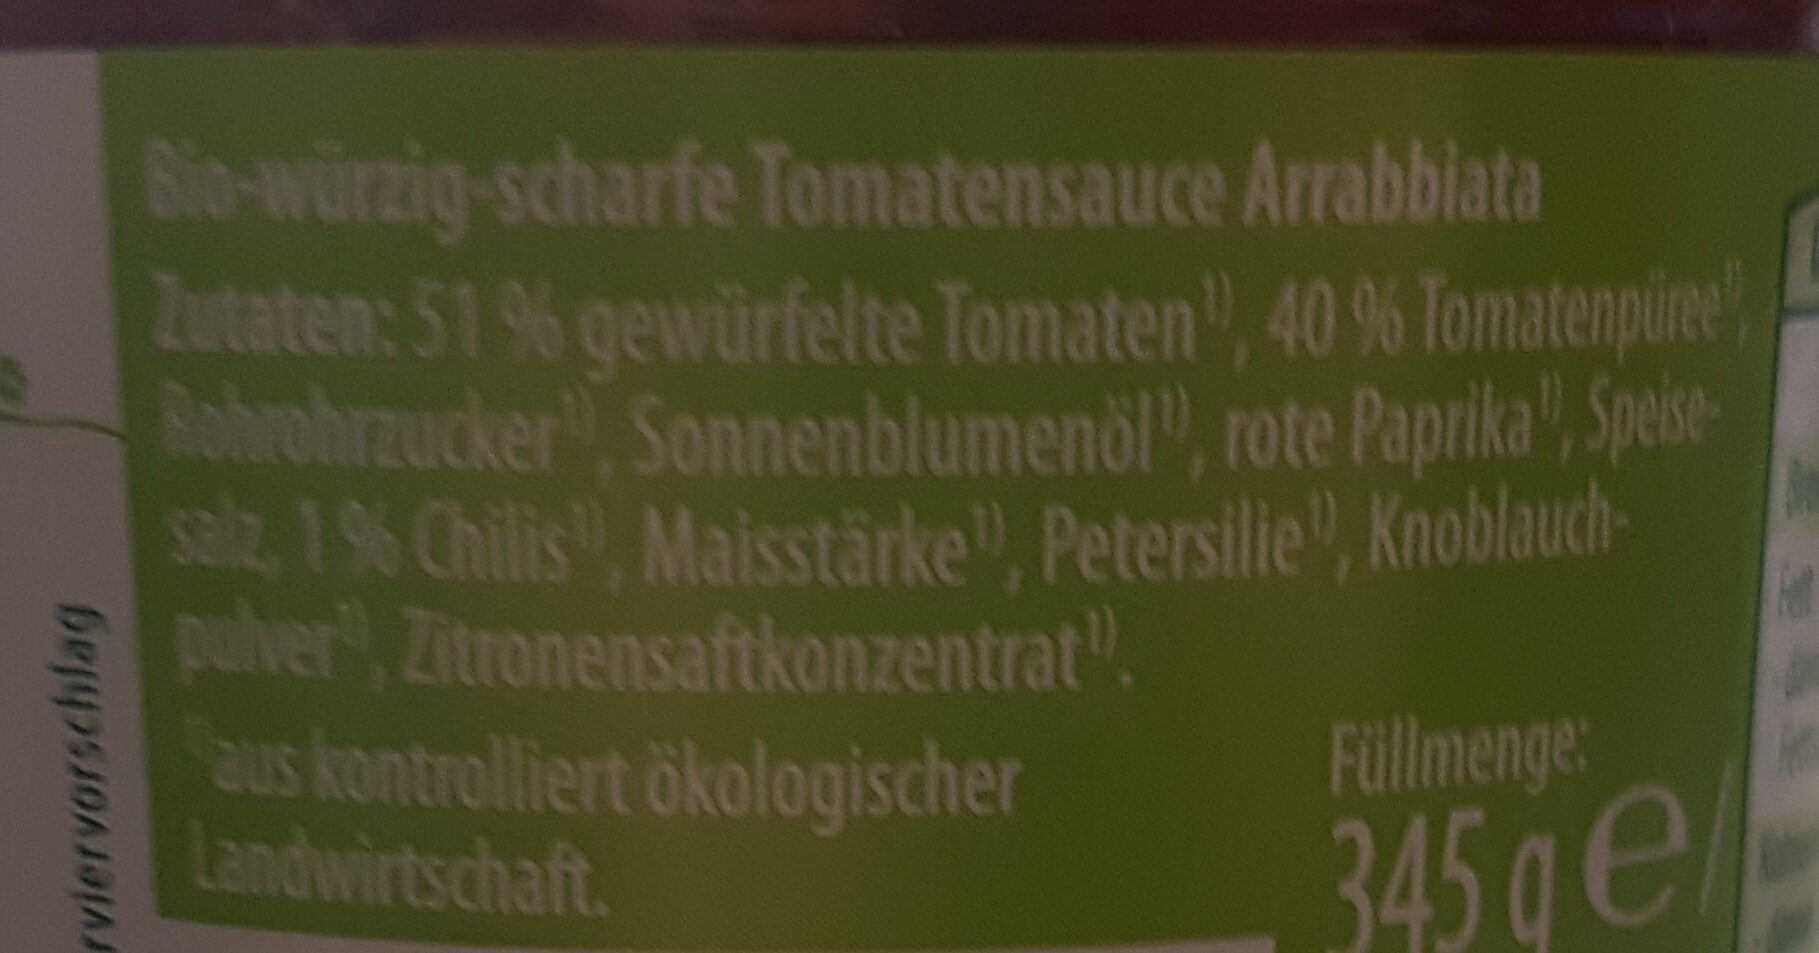 Tomatensauce all'Arrabbiata - Ingredients - de